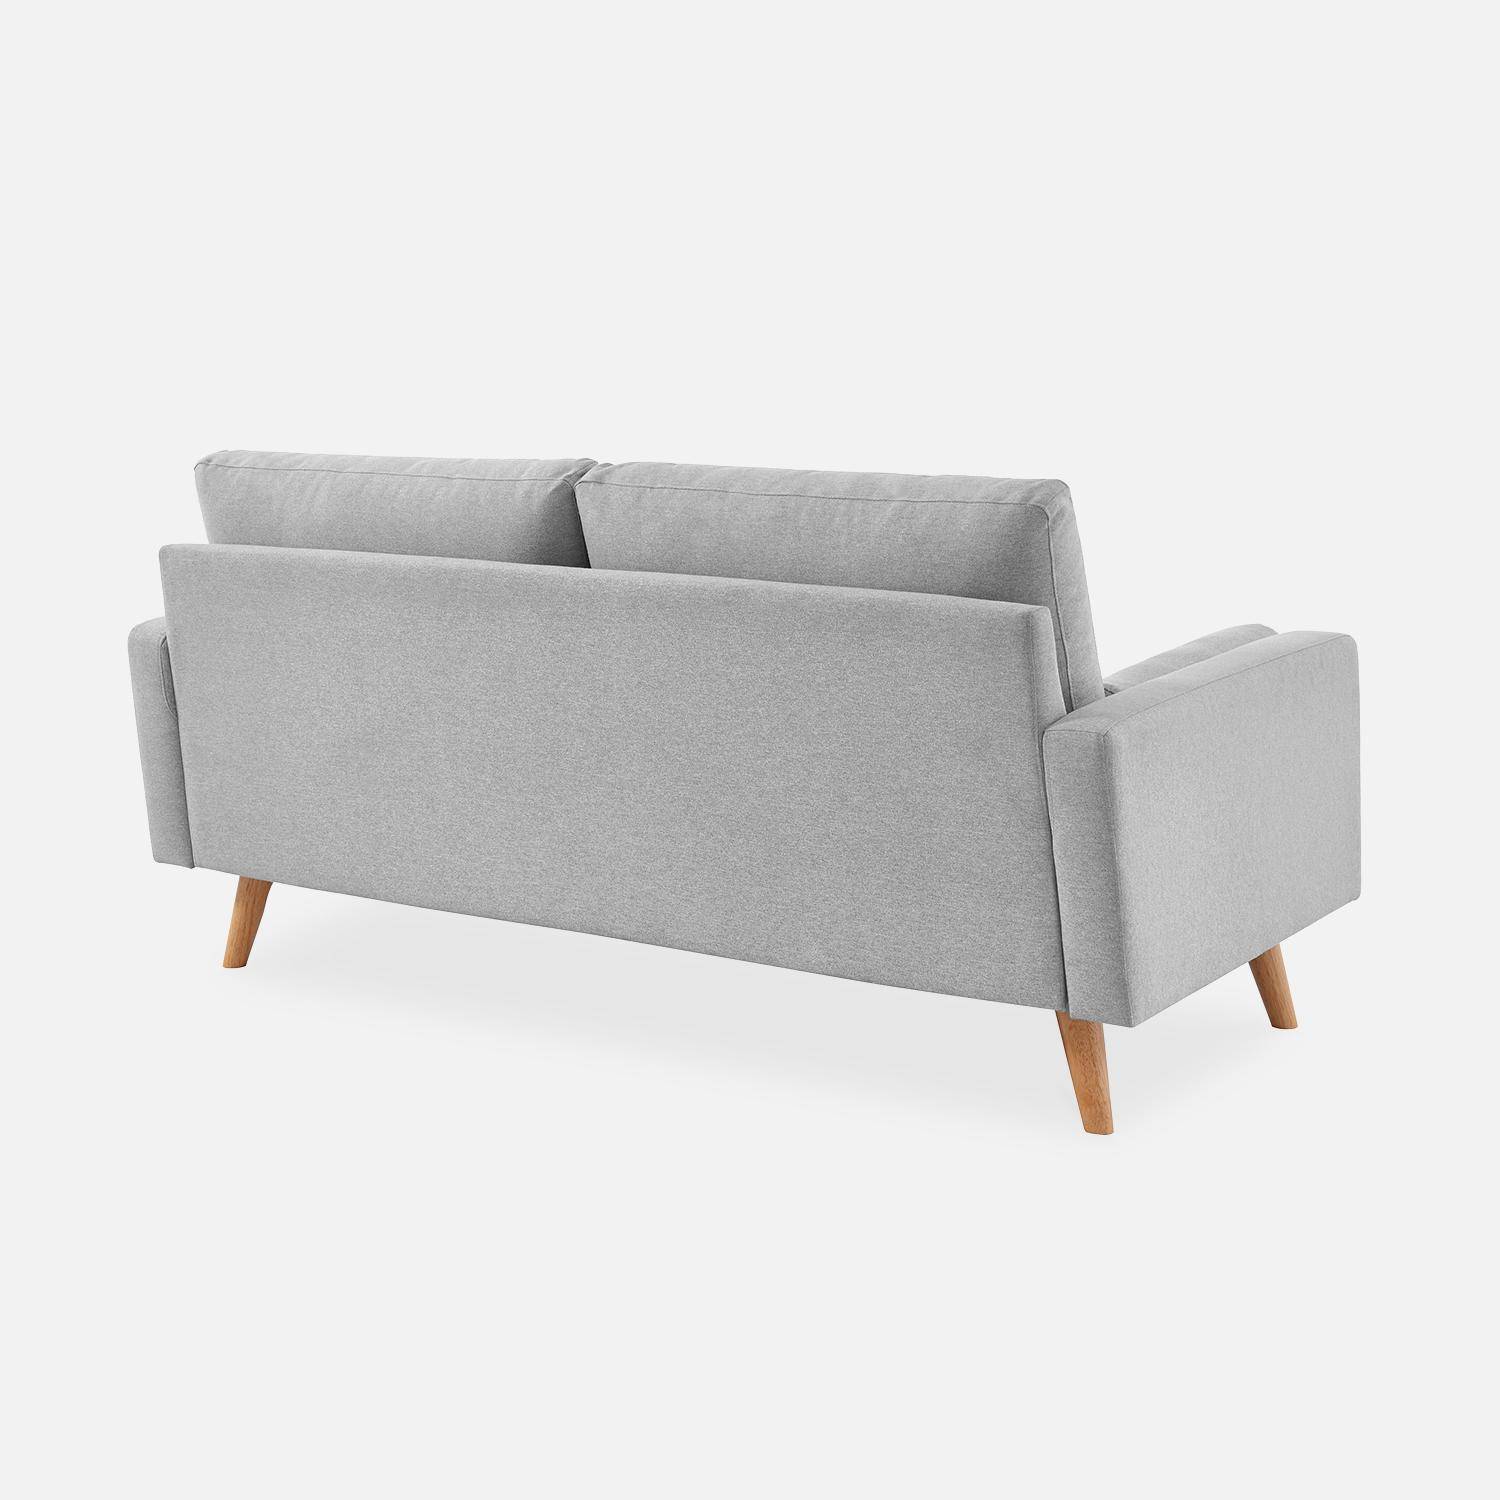 Canapé en tissu gris clair, 3 places scandinave fixe, droit, pieds bois  Photo5